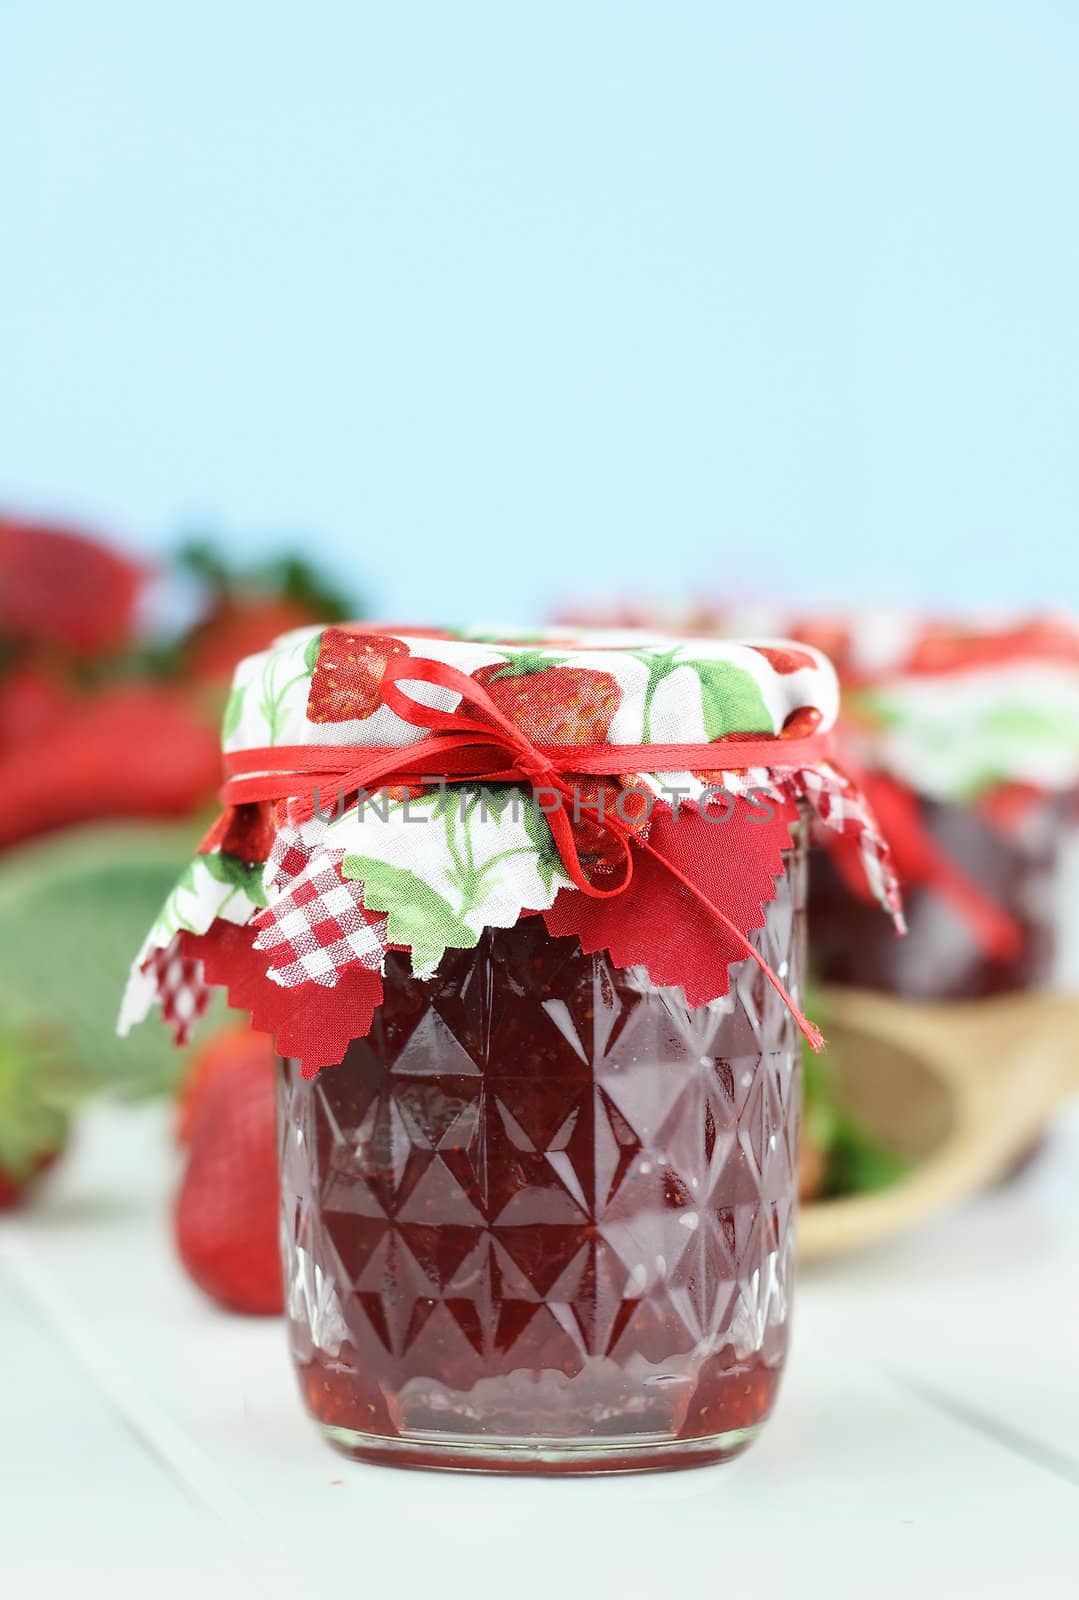 Strawberry Jam by StephanieFrey